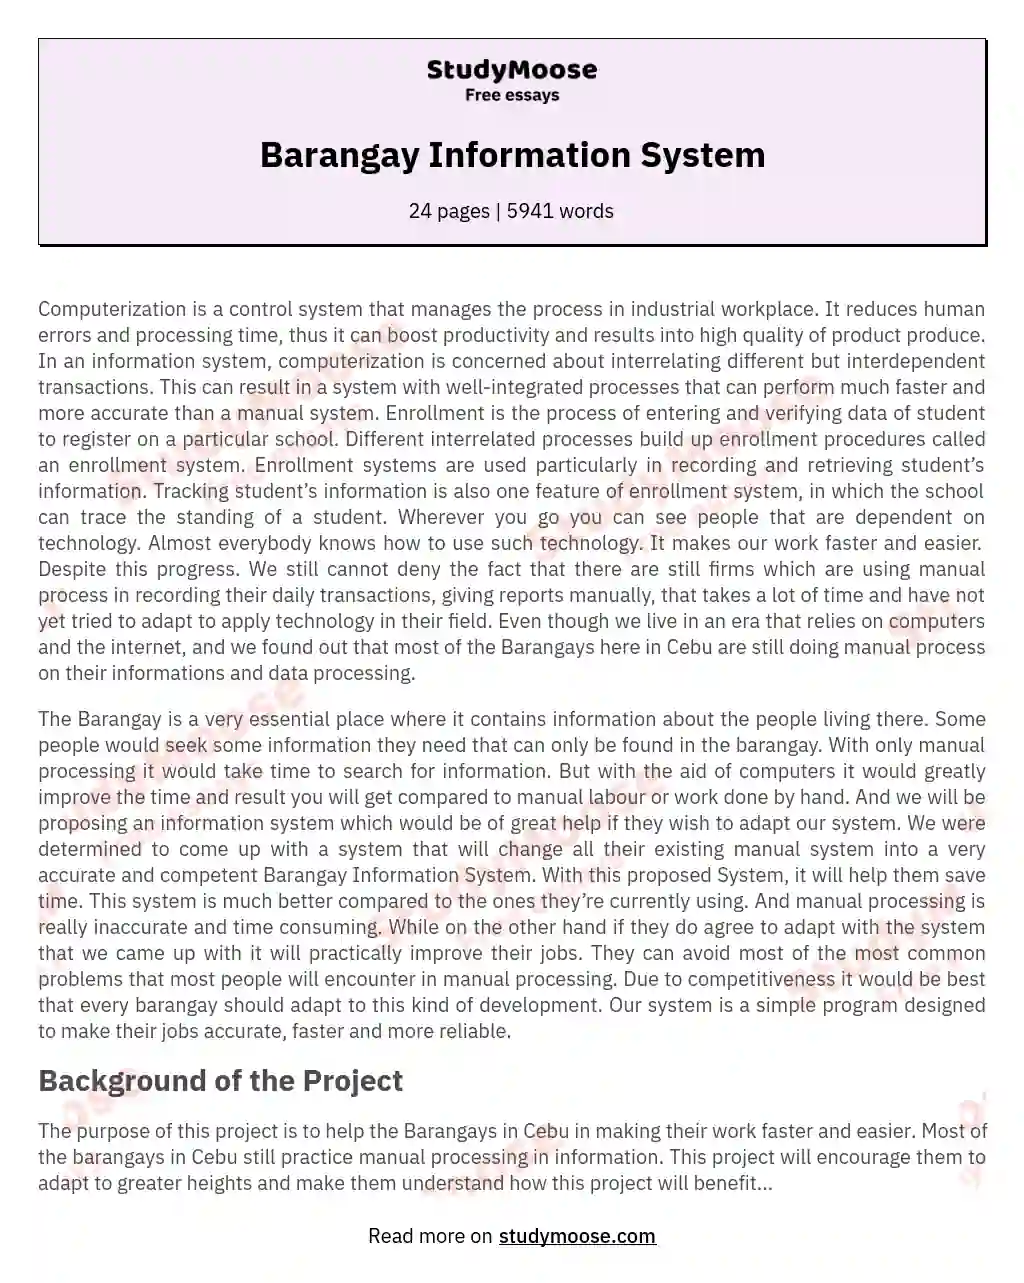 Barangay Information System essay